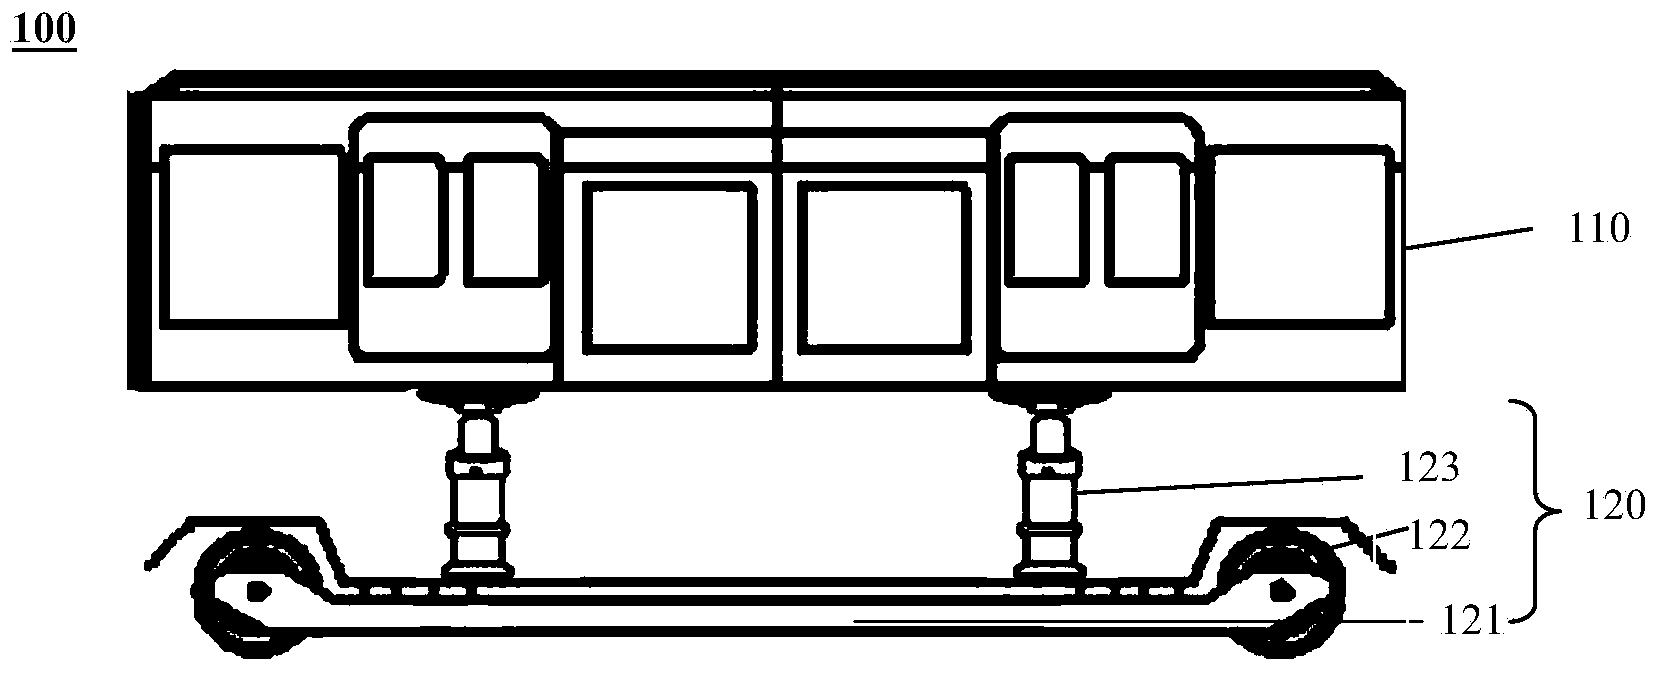 Railway vehicle and train